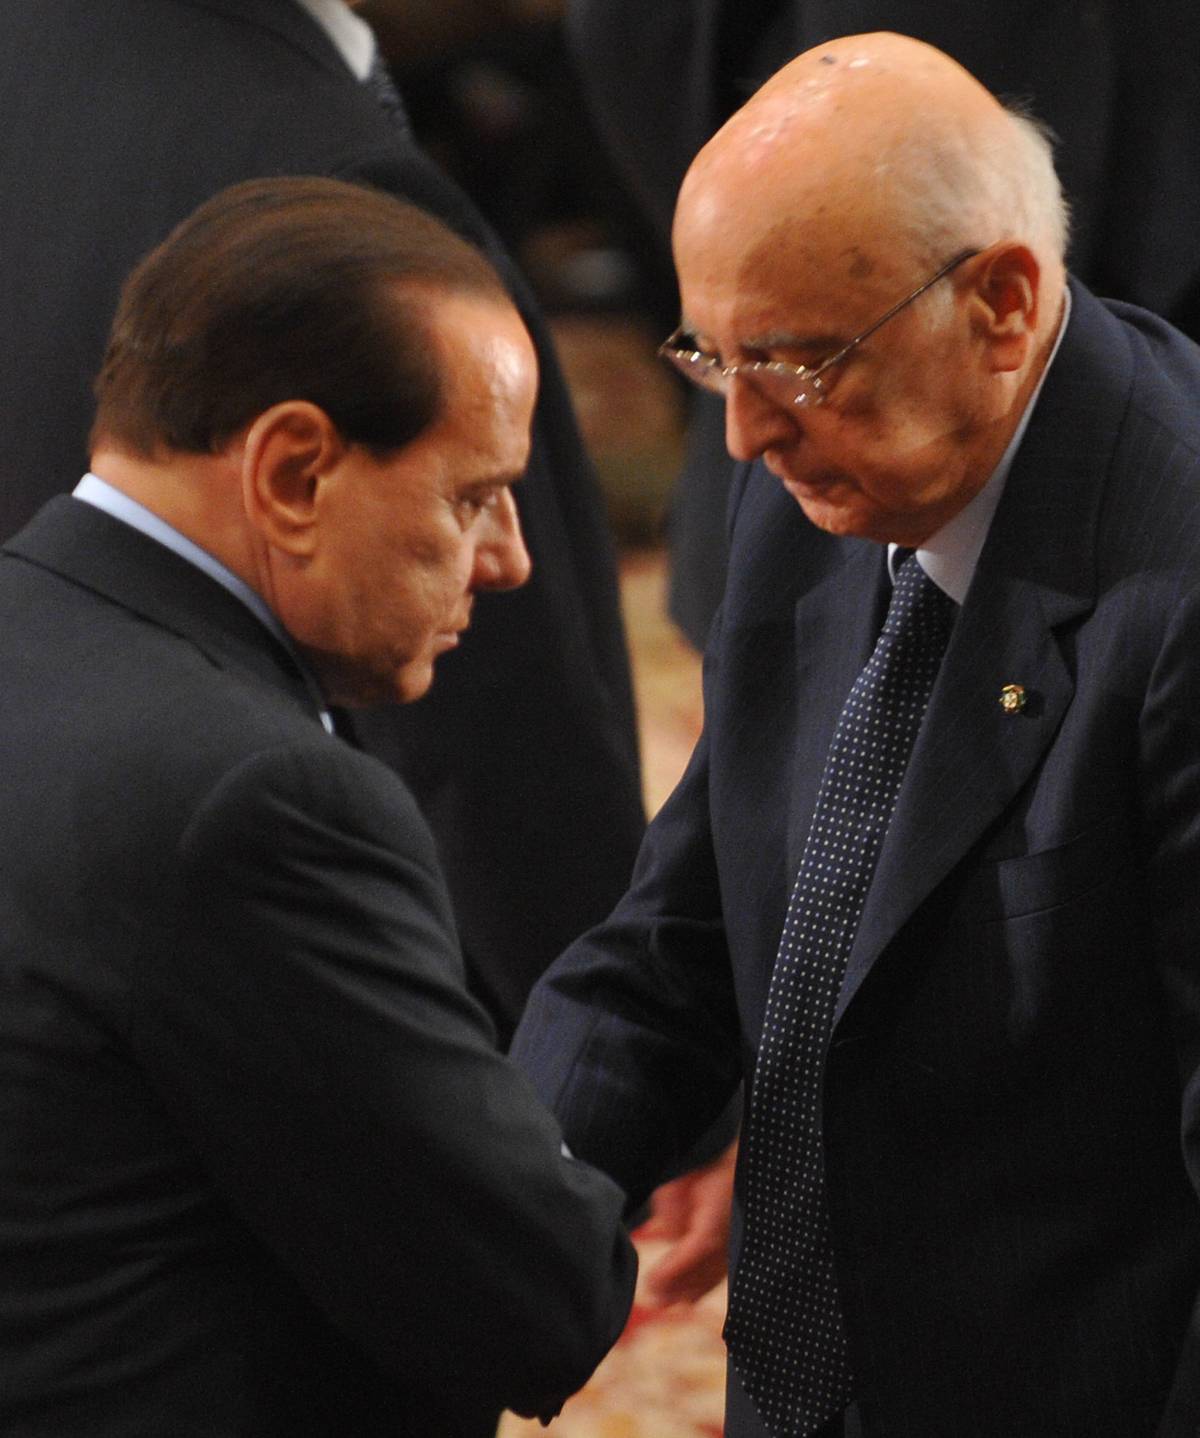 Il premier al Quirinale: "Violenza? Contro di me" 
Fini fa muro: "Napolitano è arbitro imparziale"